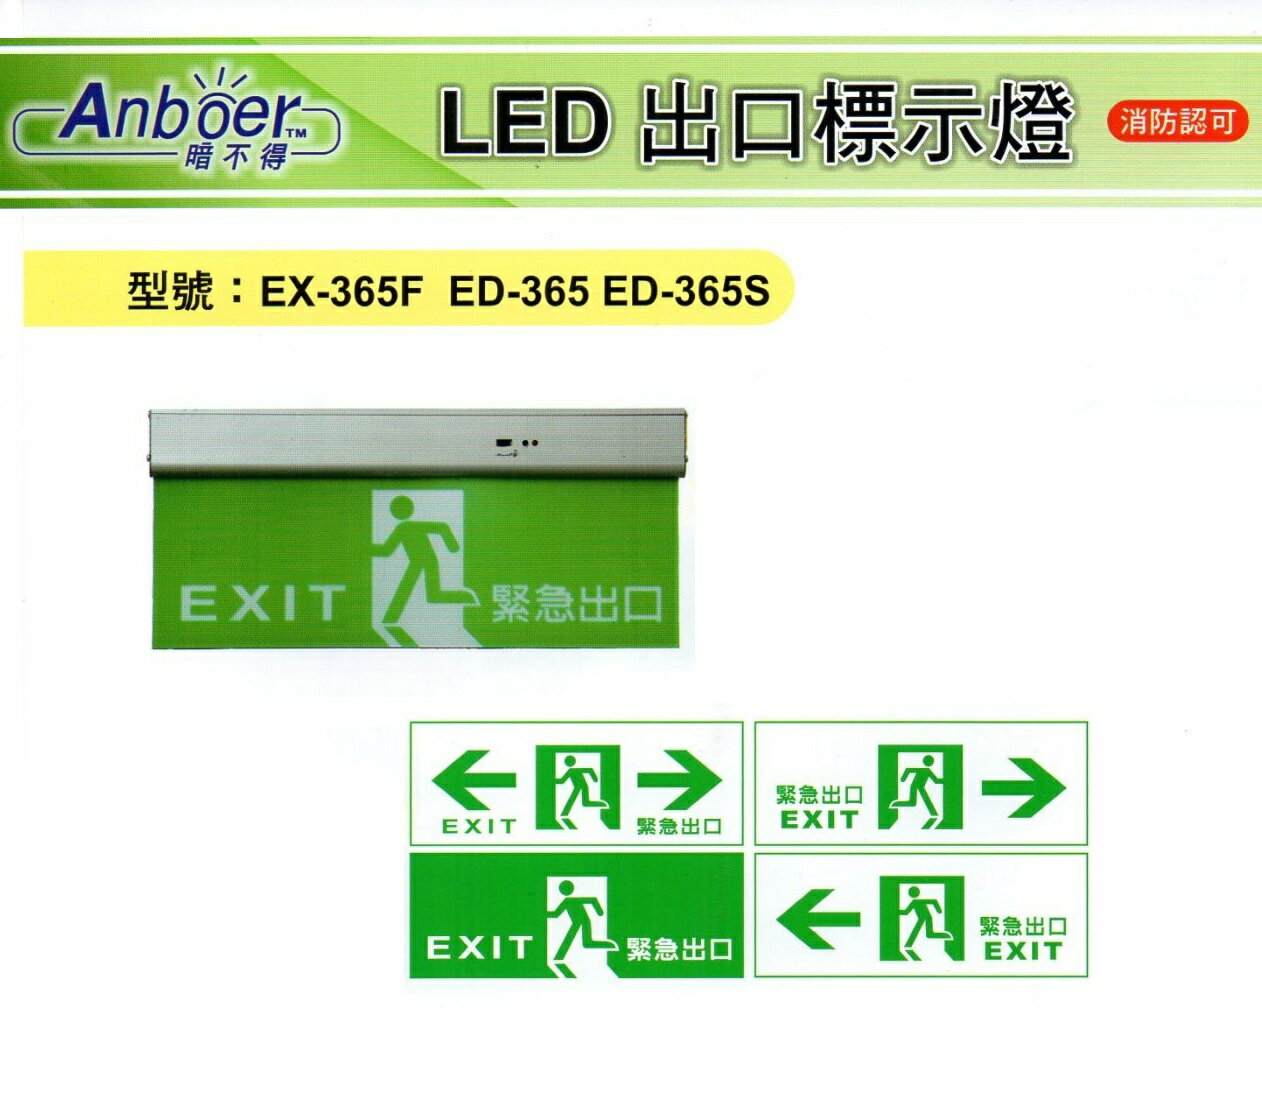 Anboer/LED 方向指示燈 緊急出口指示燈 出口標示燈 耳掛式 小型3:1 全電壓 〖永光照明〗TG-A360N